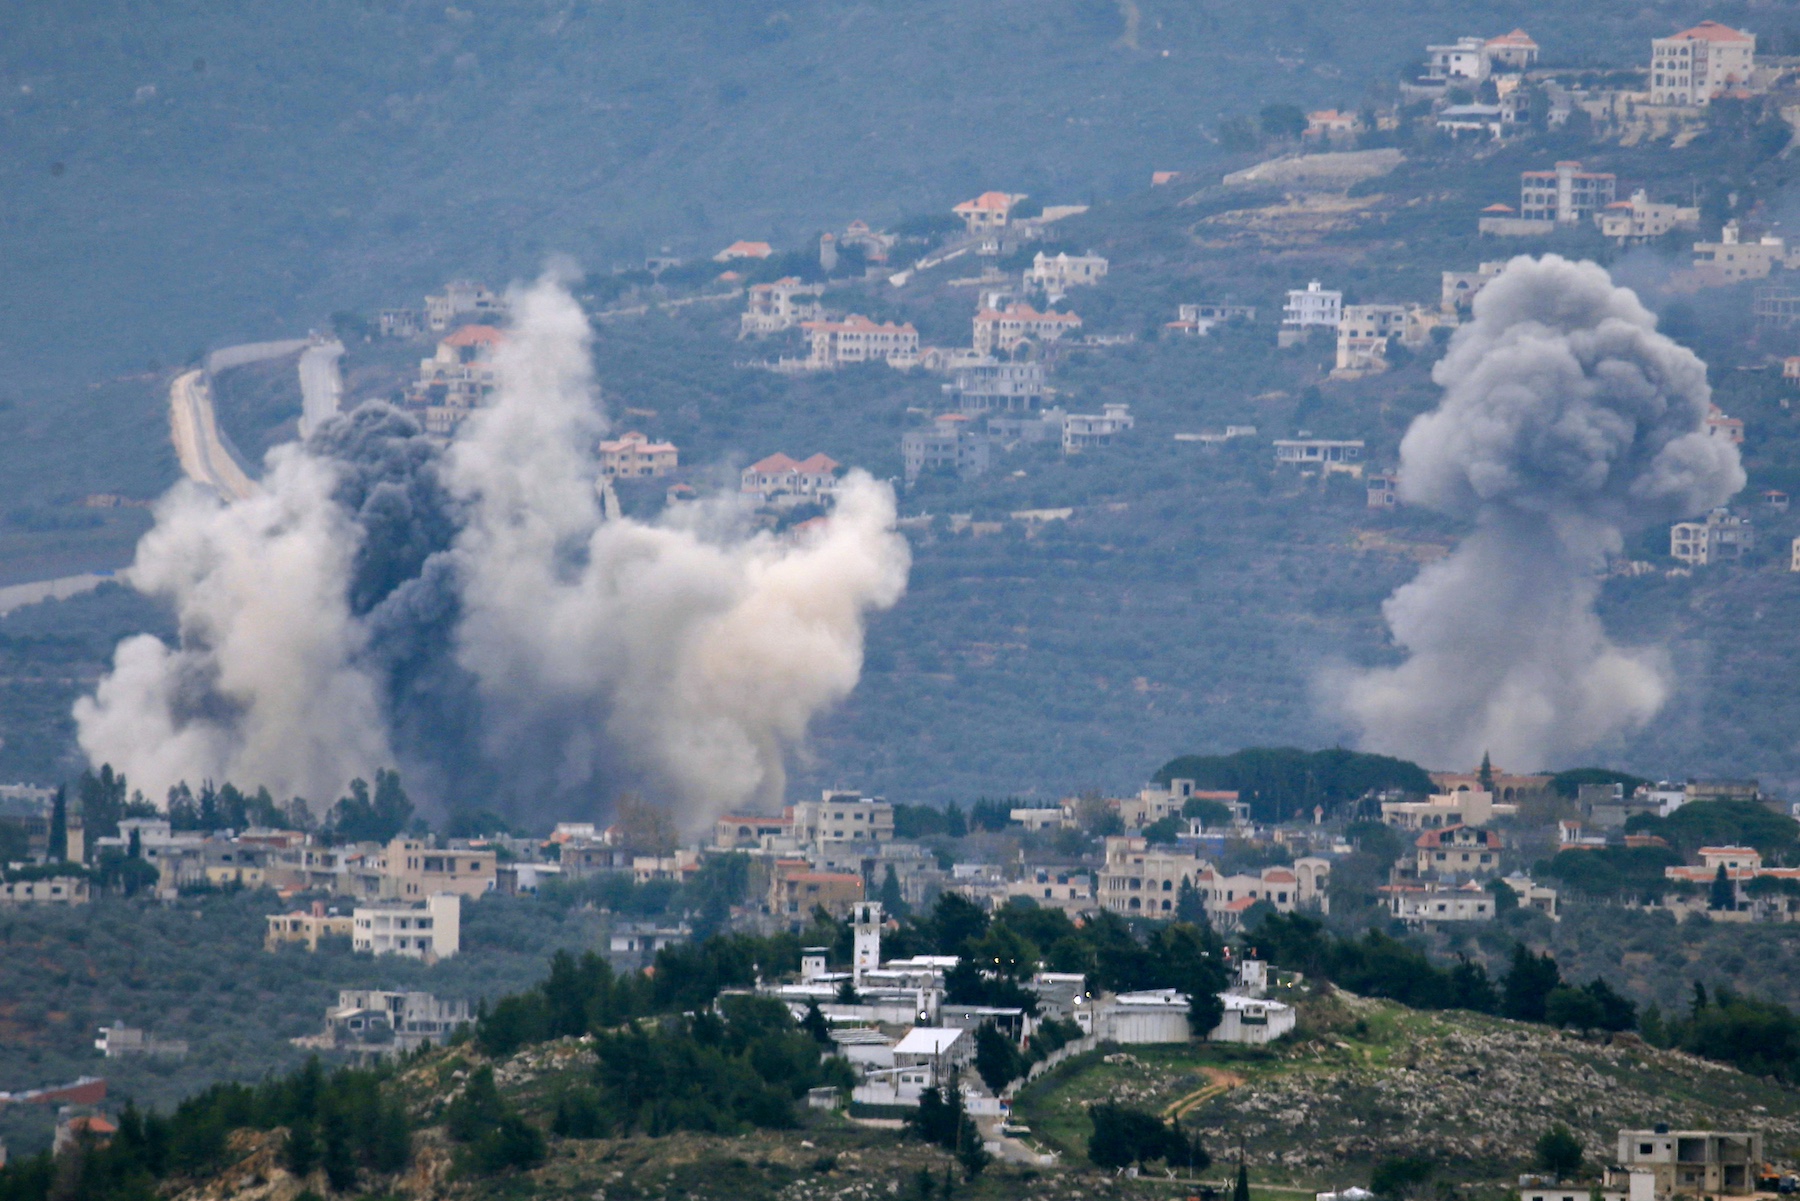 Smoke Israeli bombardment over Lebanon